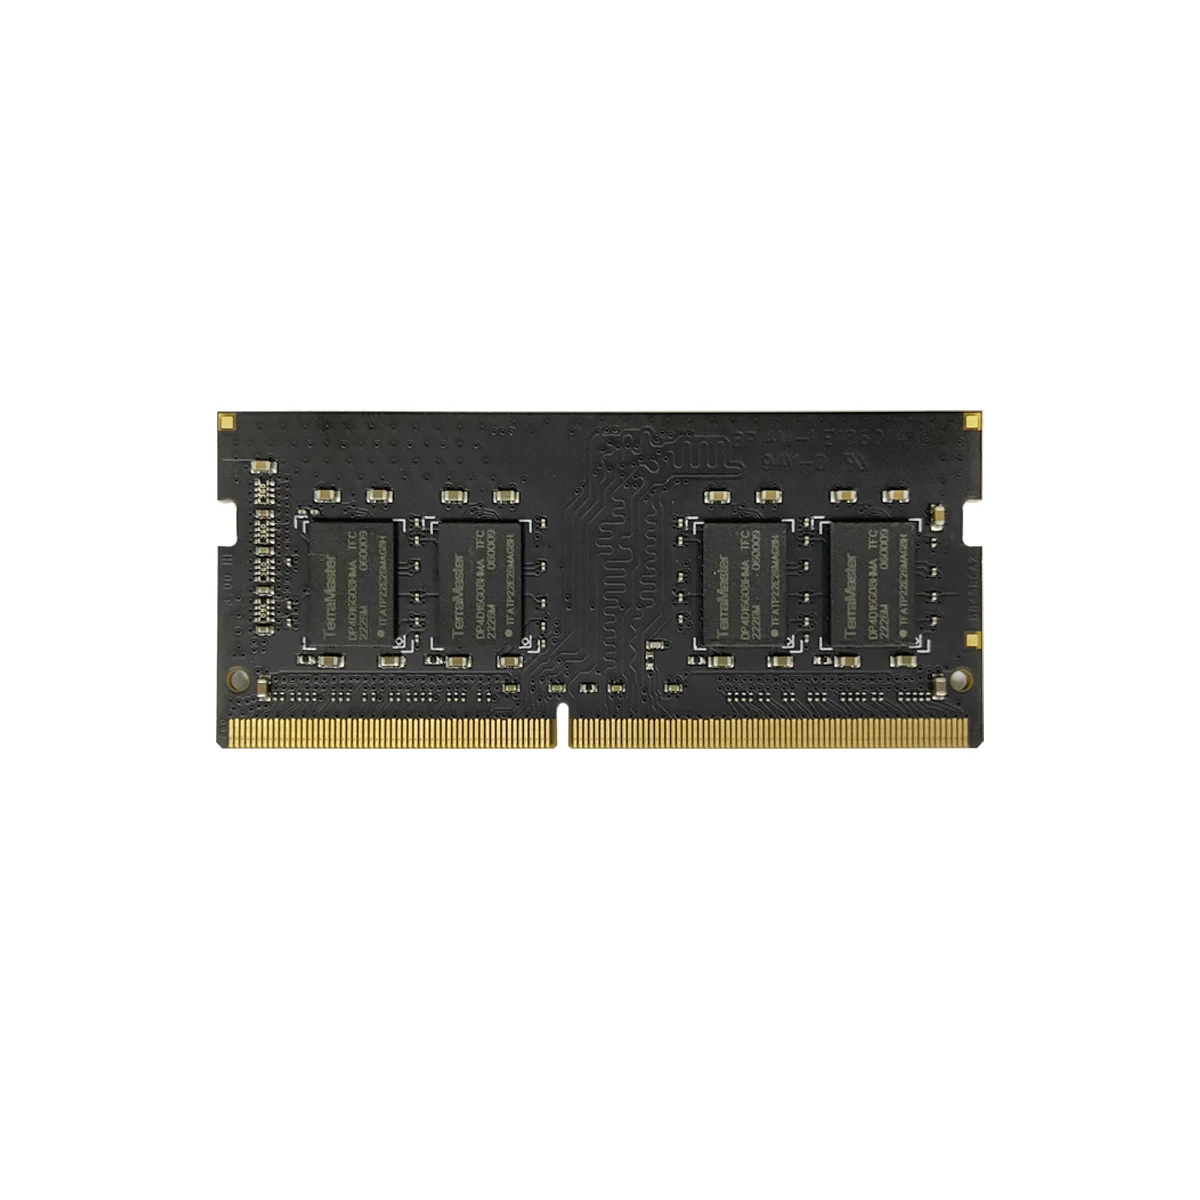 TERRAMASTER 16G DDR4 RAM SO-DIMM for F2-223, F4-223, F2-423, F4-423, T6-423, T9-423, T12-423, U4-423, U8-423